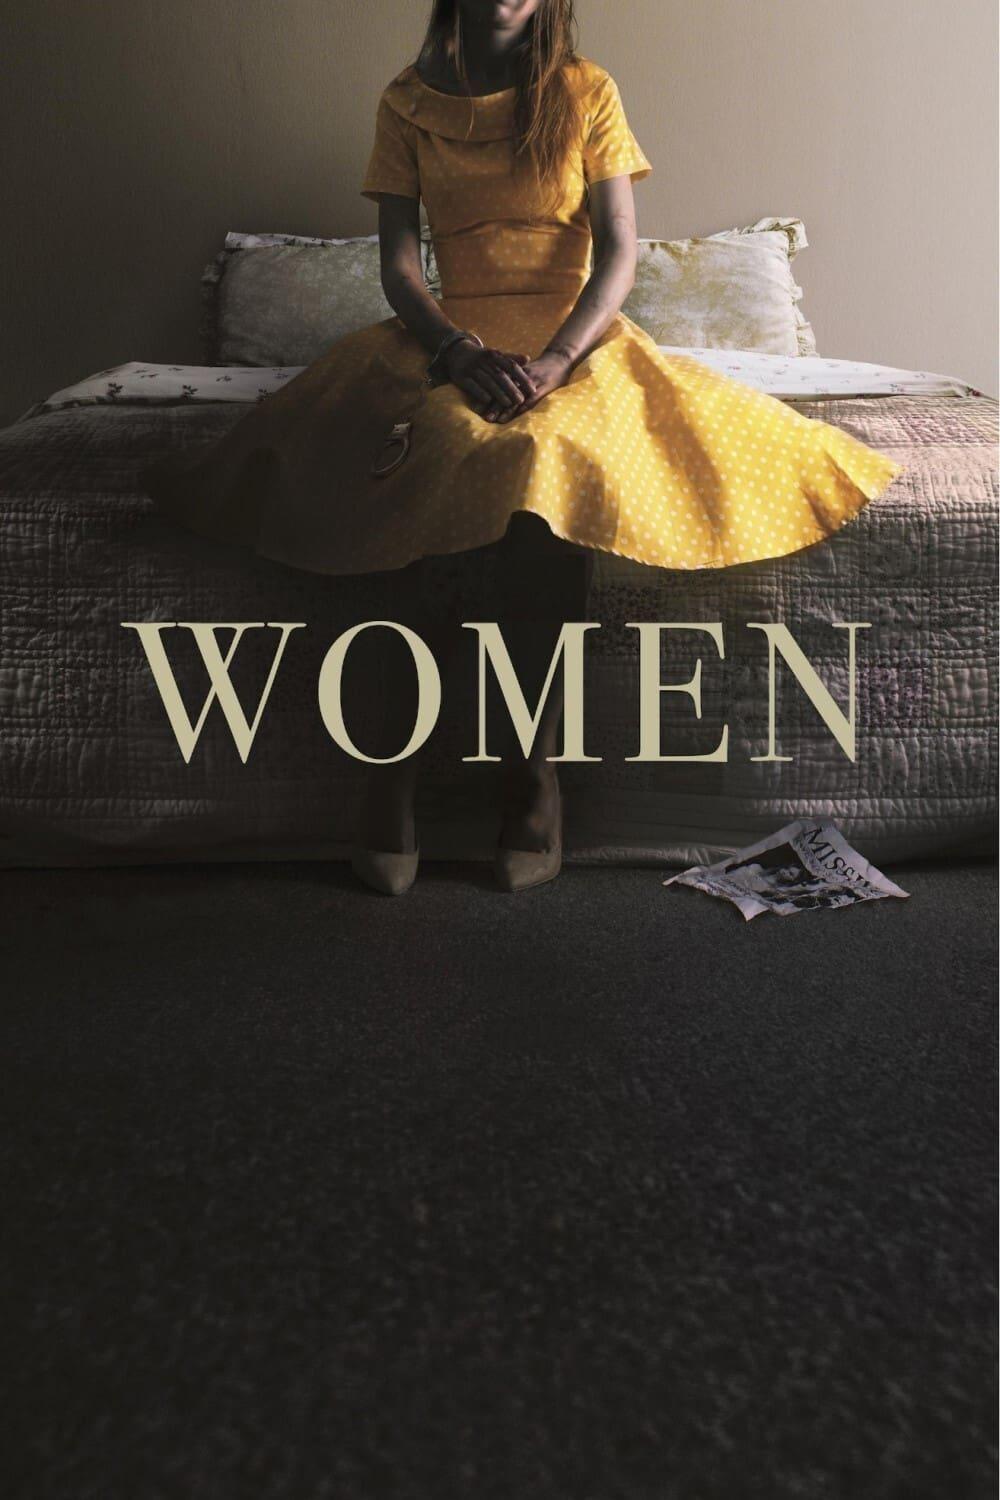 Women poster